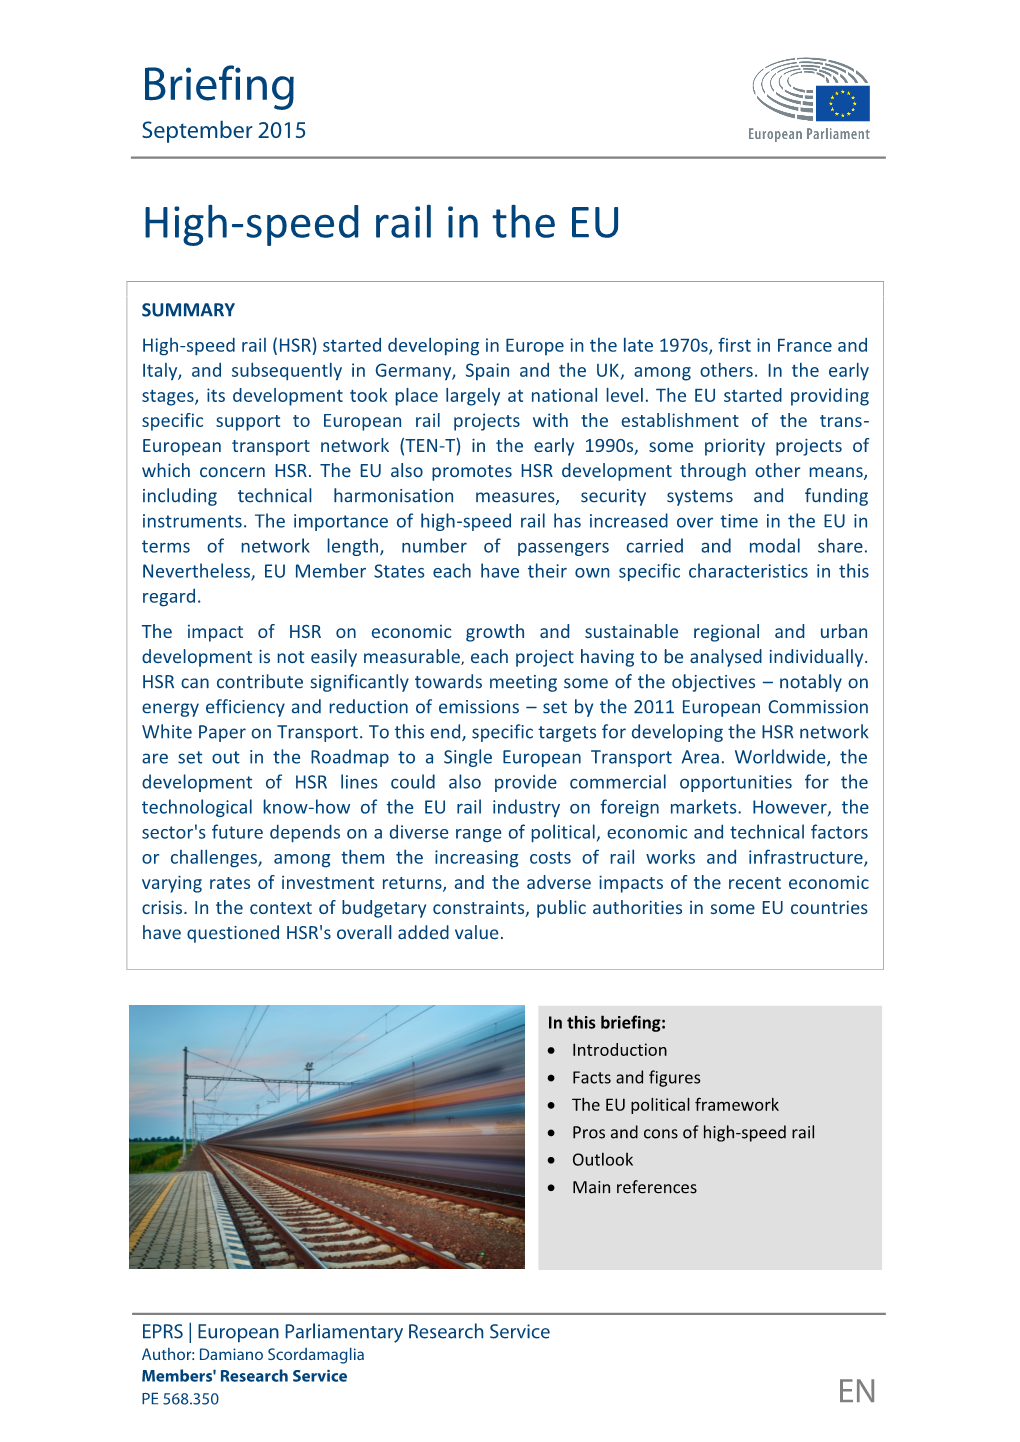 High-Speed Rail in the EU